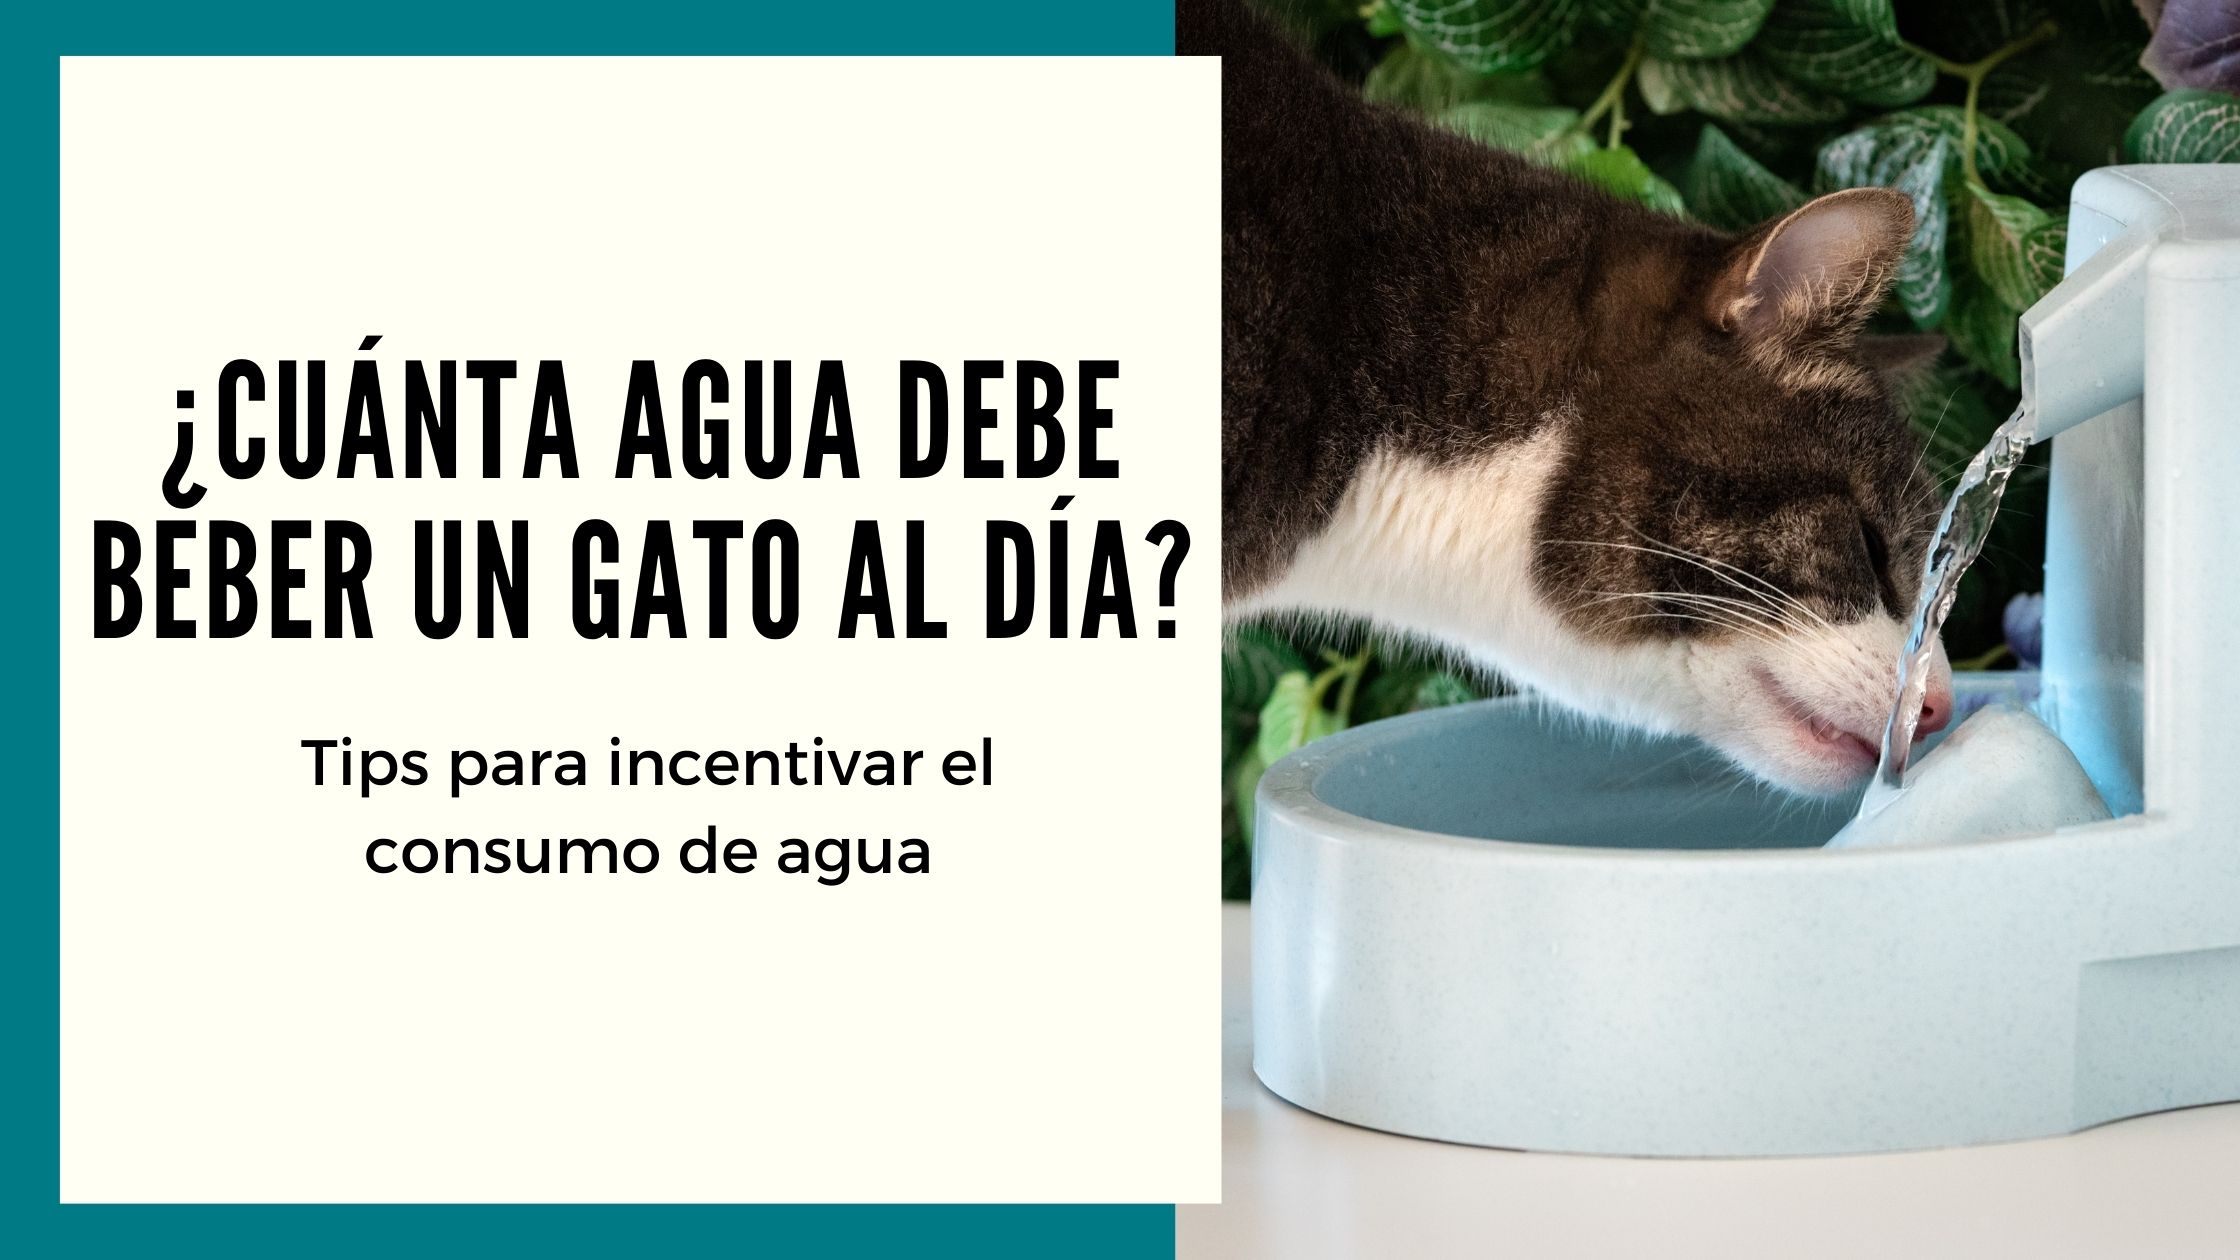 Cuánta agua debe beber un gato al día?